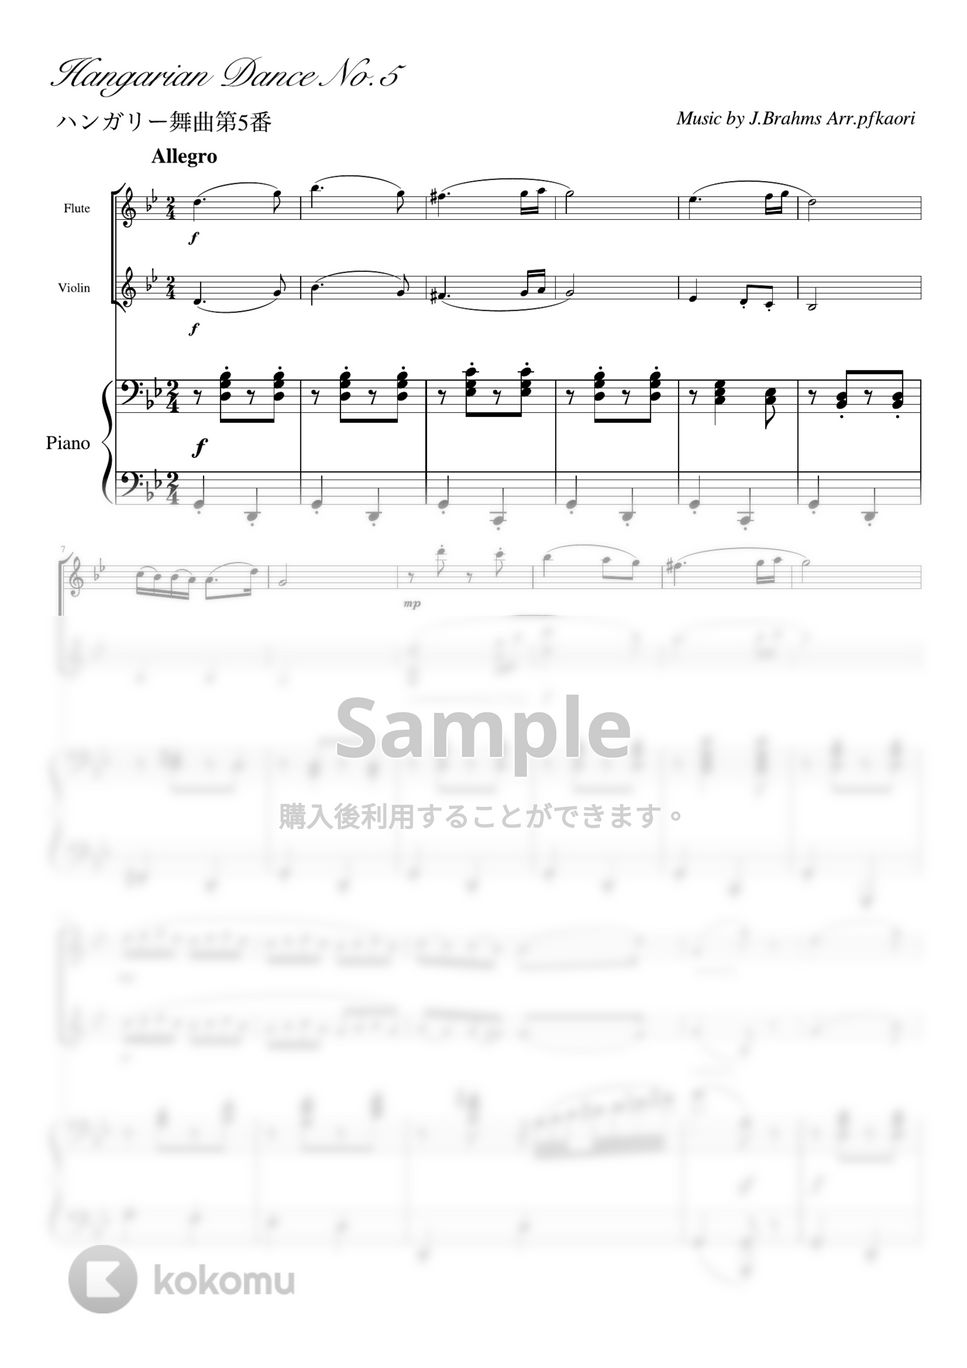 ブラームス - ハンガリー舞曲第5番 (ピアノトリオ(フルートバイオリン)) by pfkaori